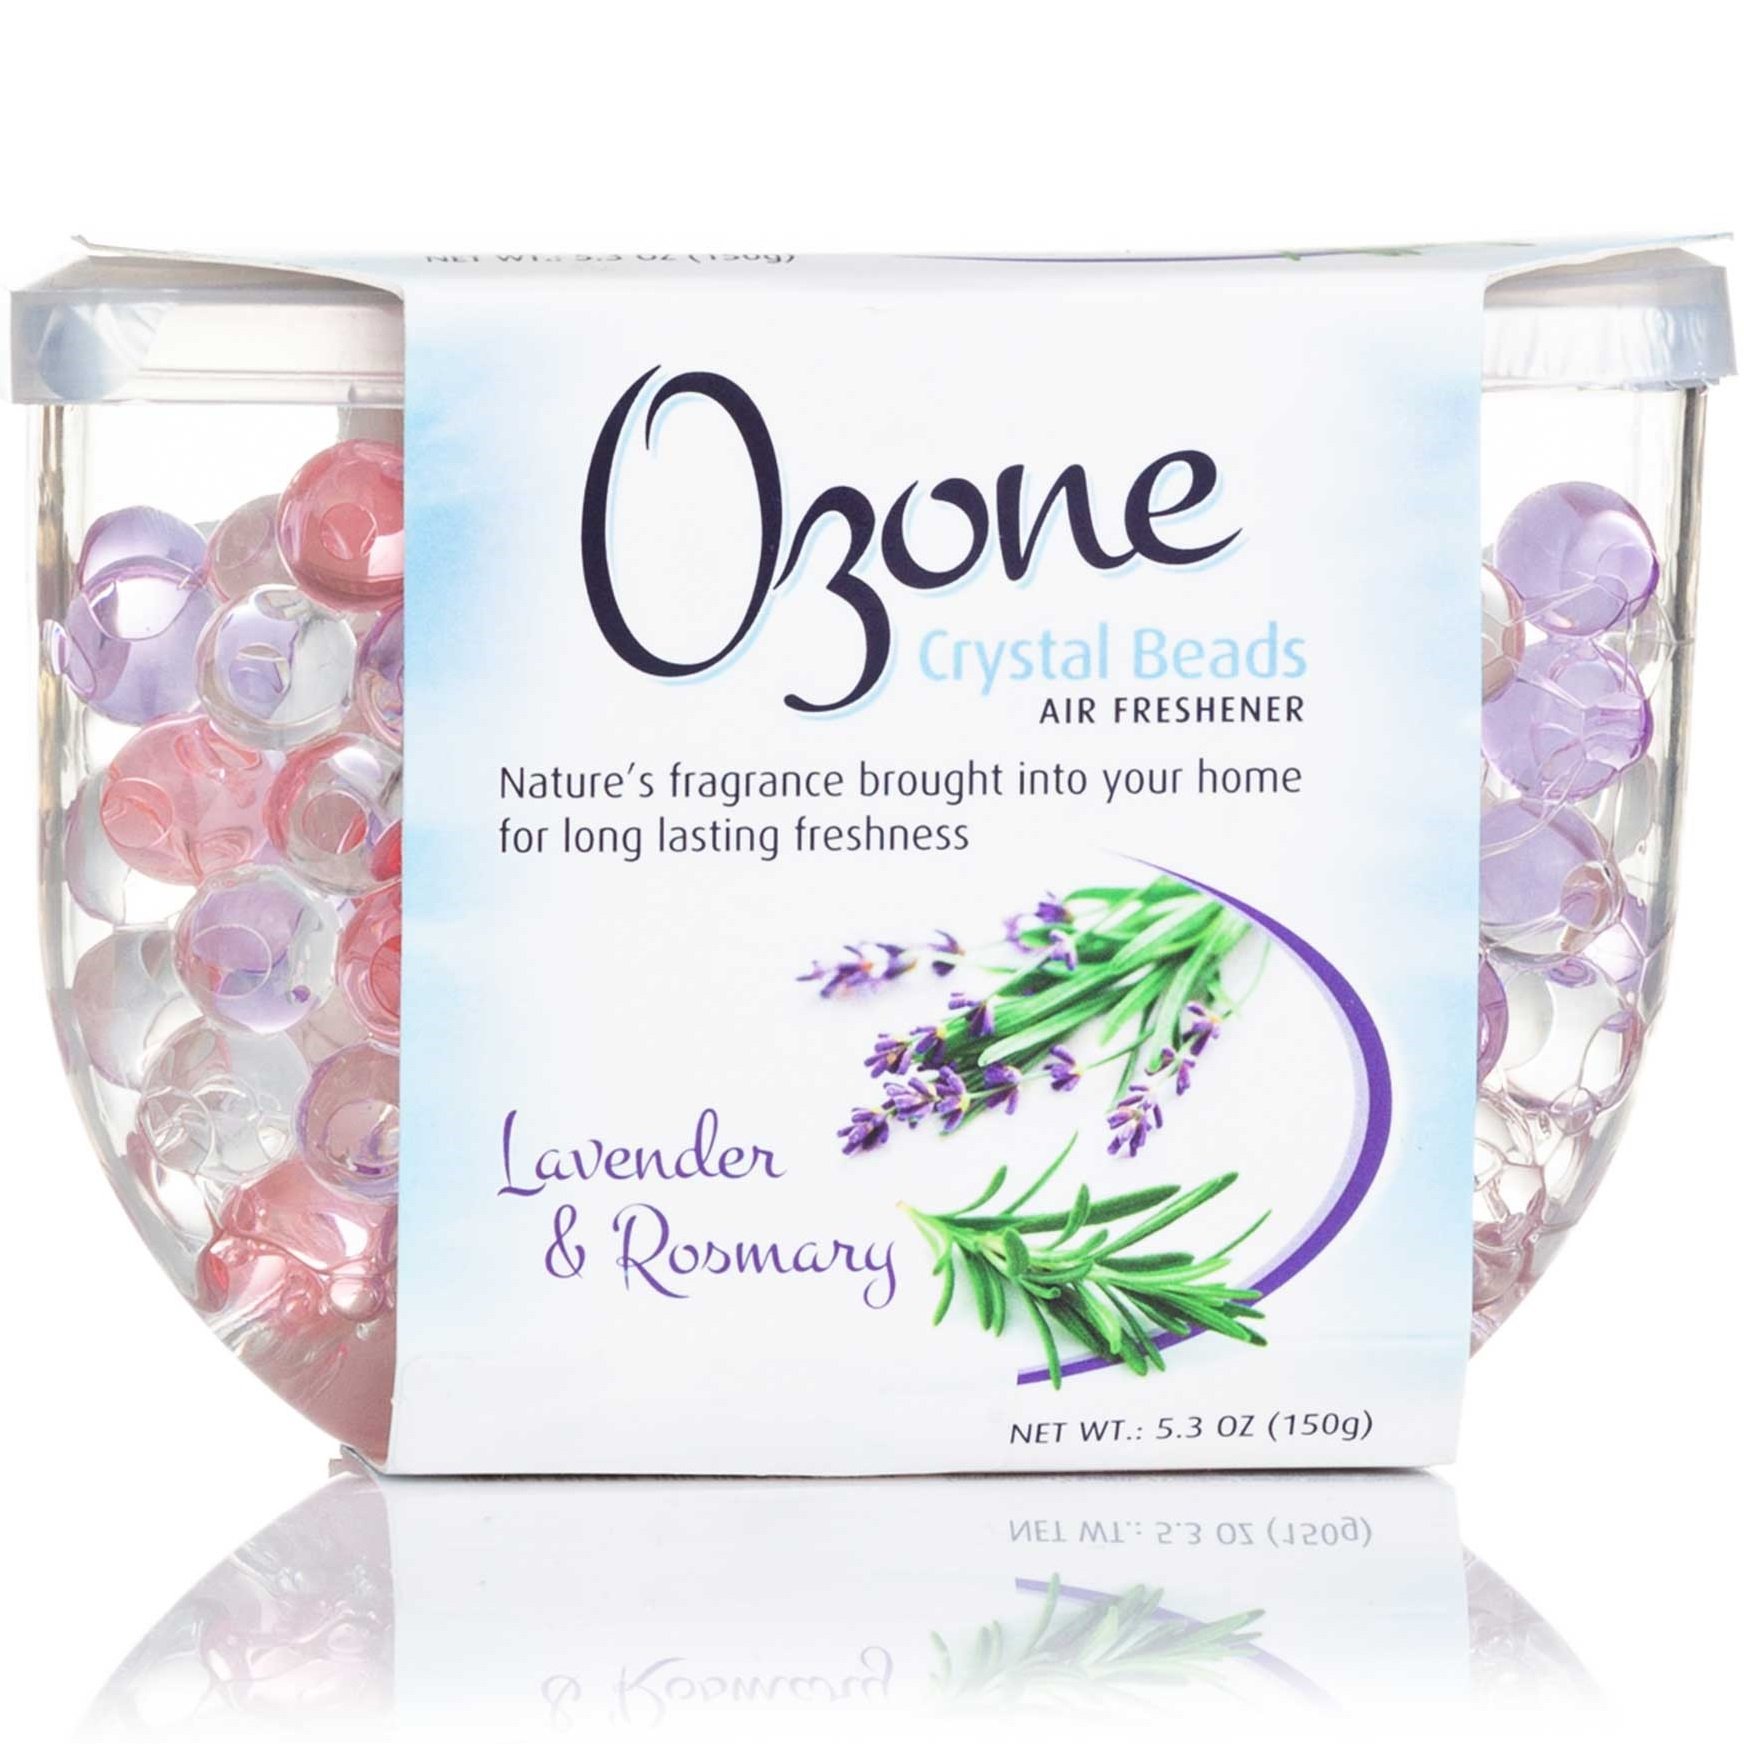 Освіжувач повітря Ozone кристалічний на гелевій основі Crystal Beads, Лаванда та Розмарин, 150 г - фото 1